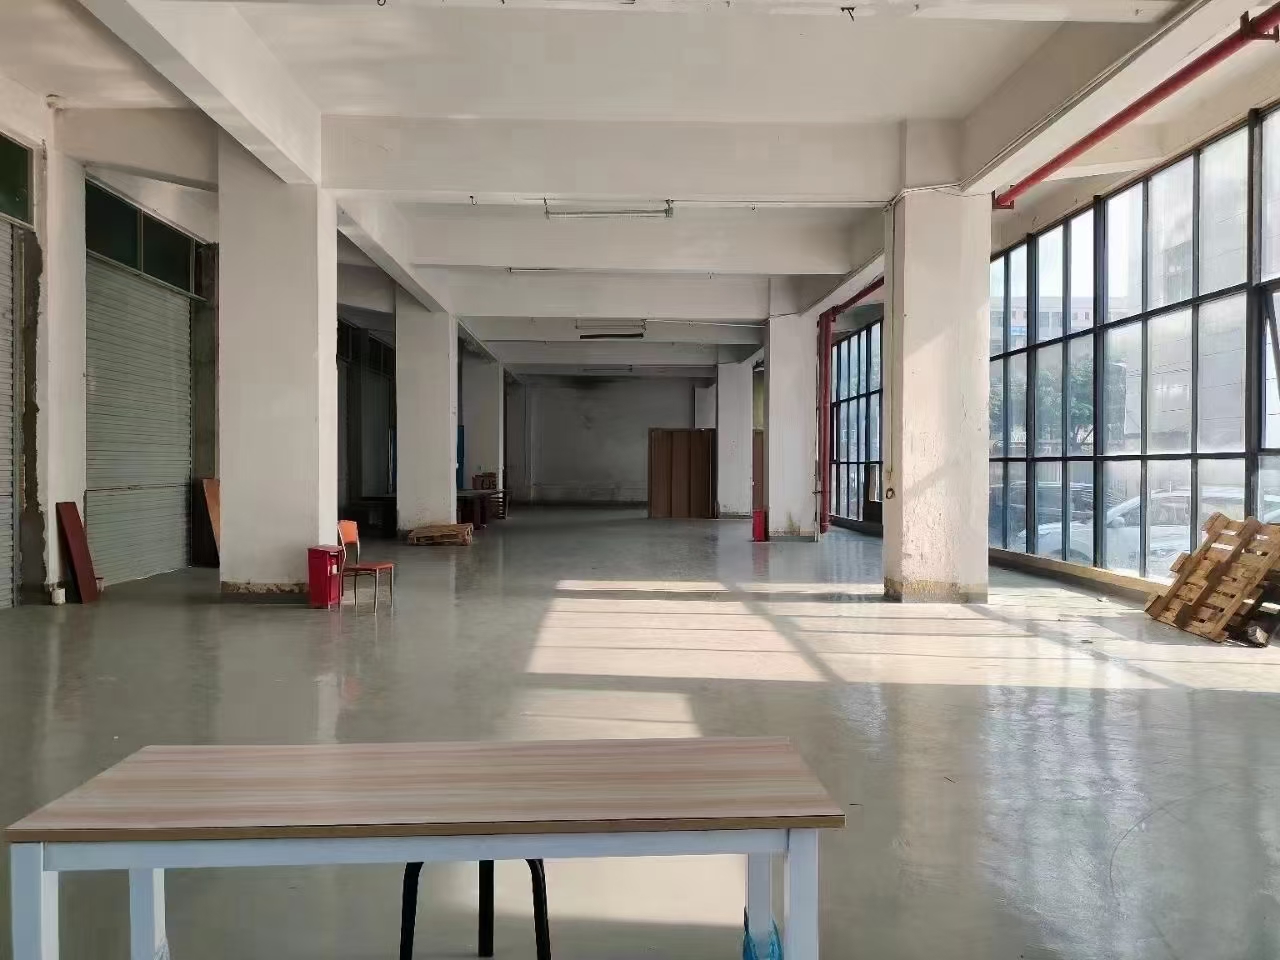 福永和平小面积厂房仓库一楼600平超大空地非常合适做物流仓库